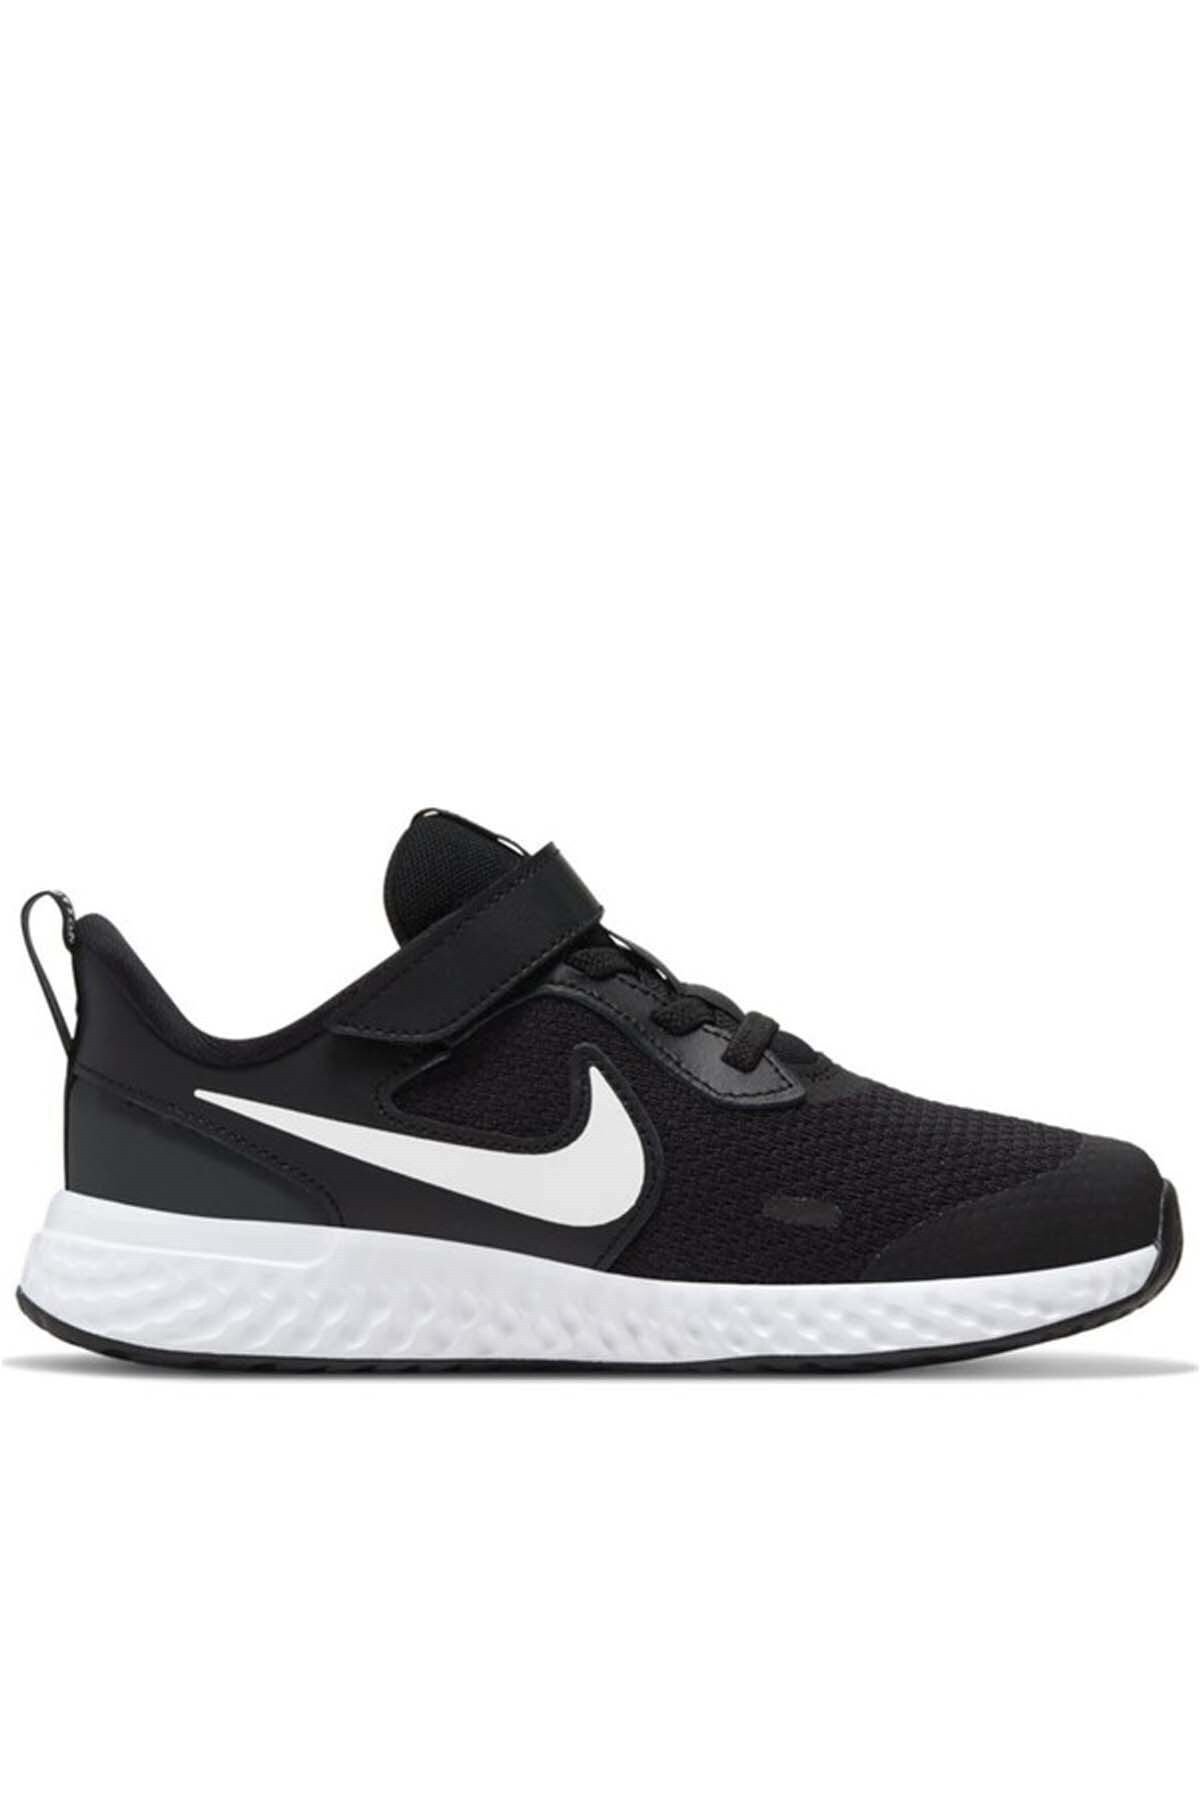 Nike Nıke Revolutıon 5 (PSV) Çocuk Yürüyüş Koşu Ayakkabı Bq5672-003-sıyah-byz